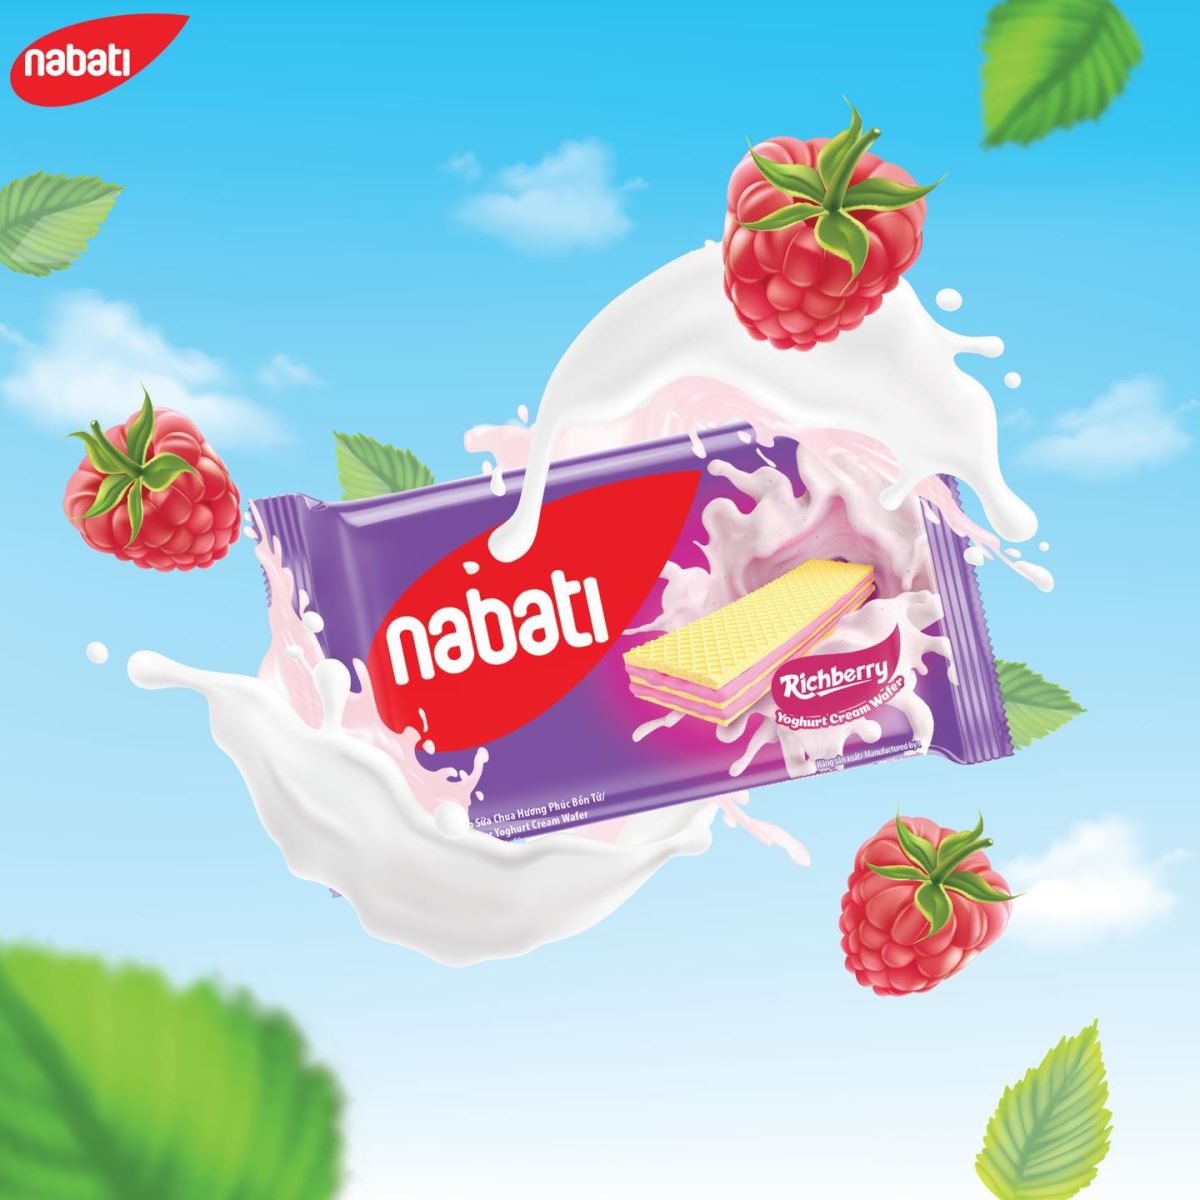 Ra mắt Nabati vị sữa chua phúc bồn tử thơm ngon mới